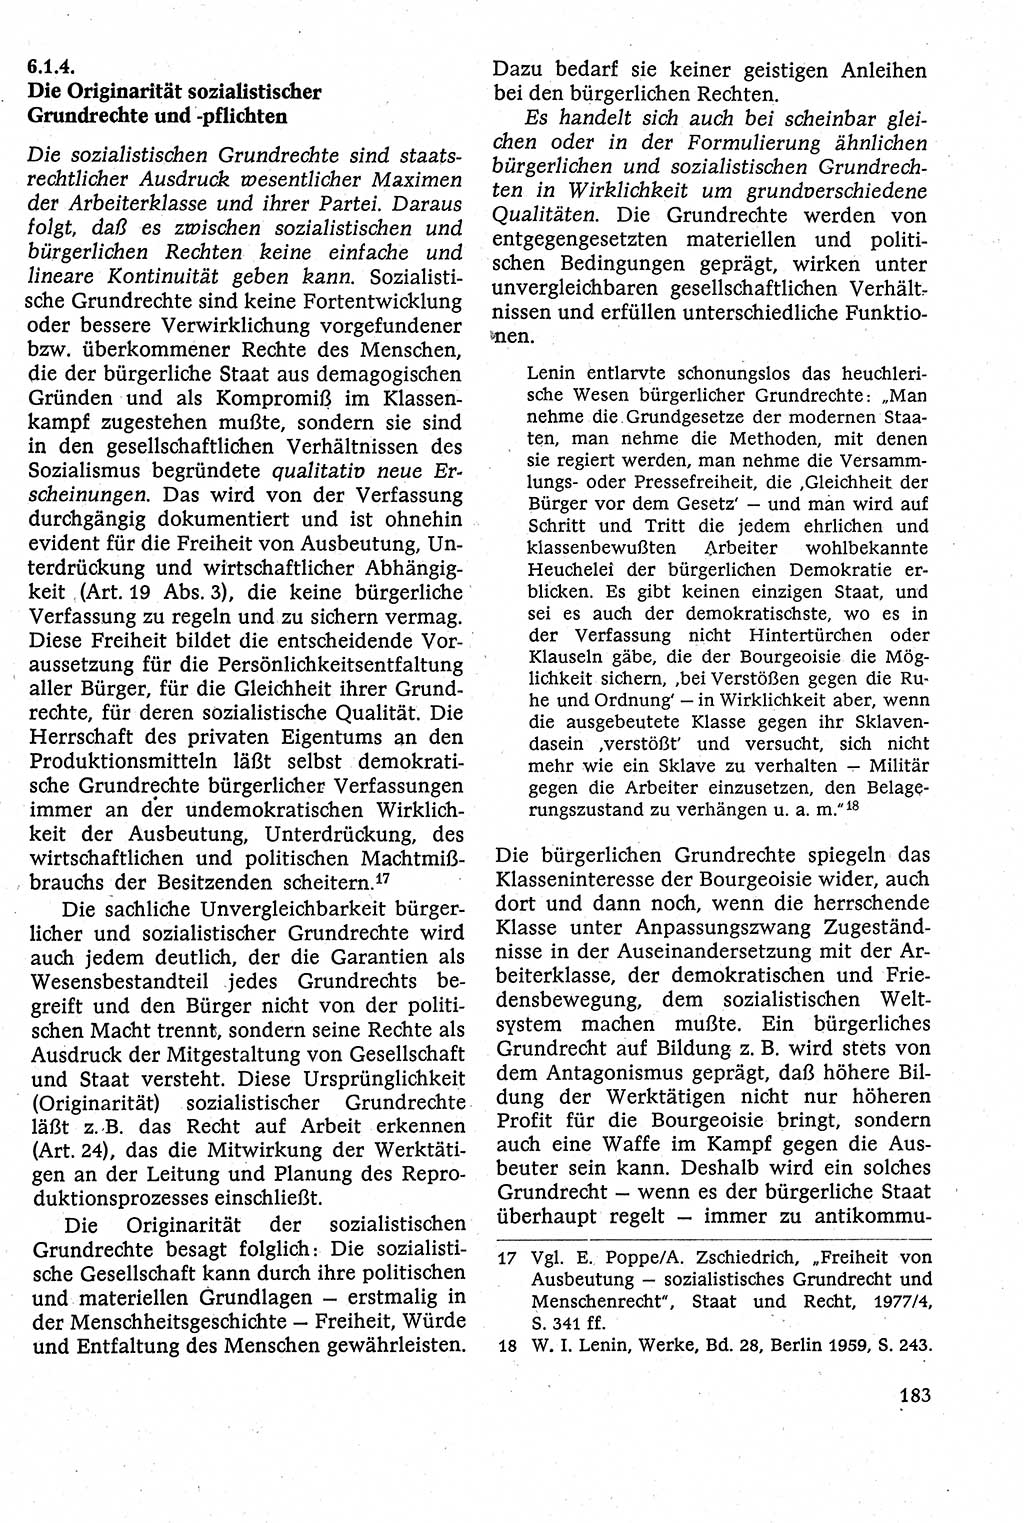 Staatsrecht der DDR [Deutsche Demokratische Republik (DDR)], Lehrbuch 1984, Seite 183 (St.-R. DDR Lb. 1984, S. 183)